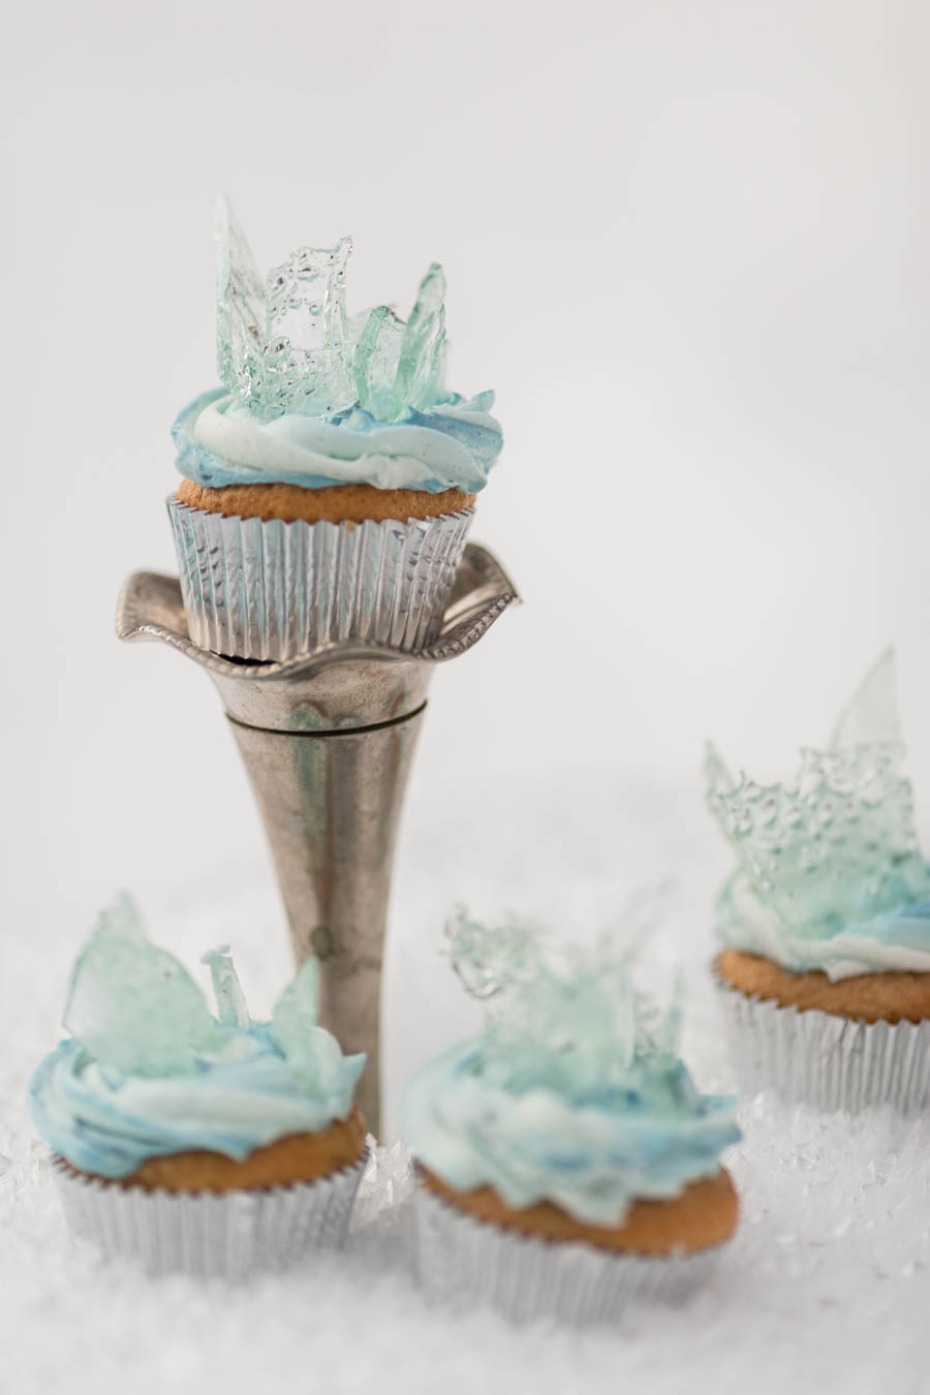 Disneys Frozen inspired wedding cupcakes